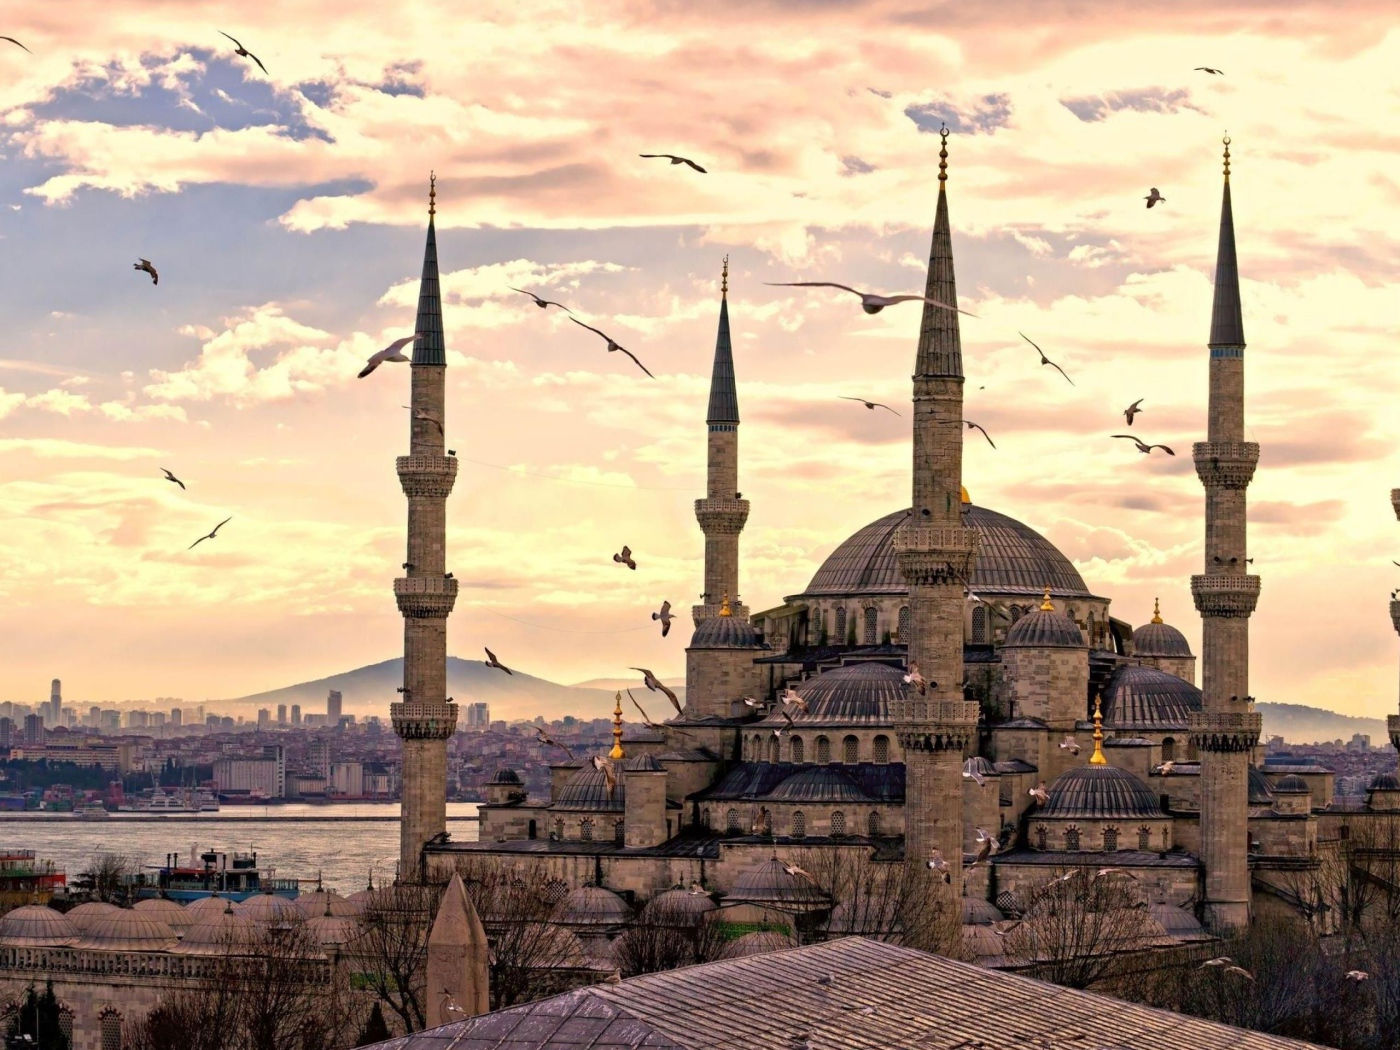 Hagia Sophia Turkey in the evening